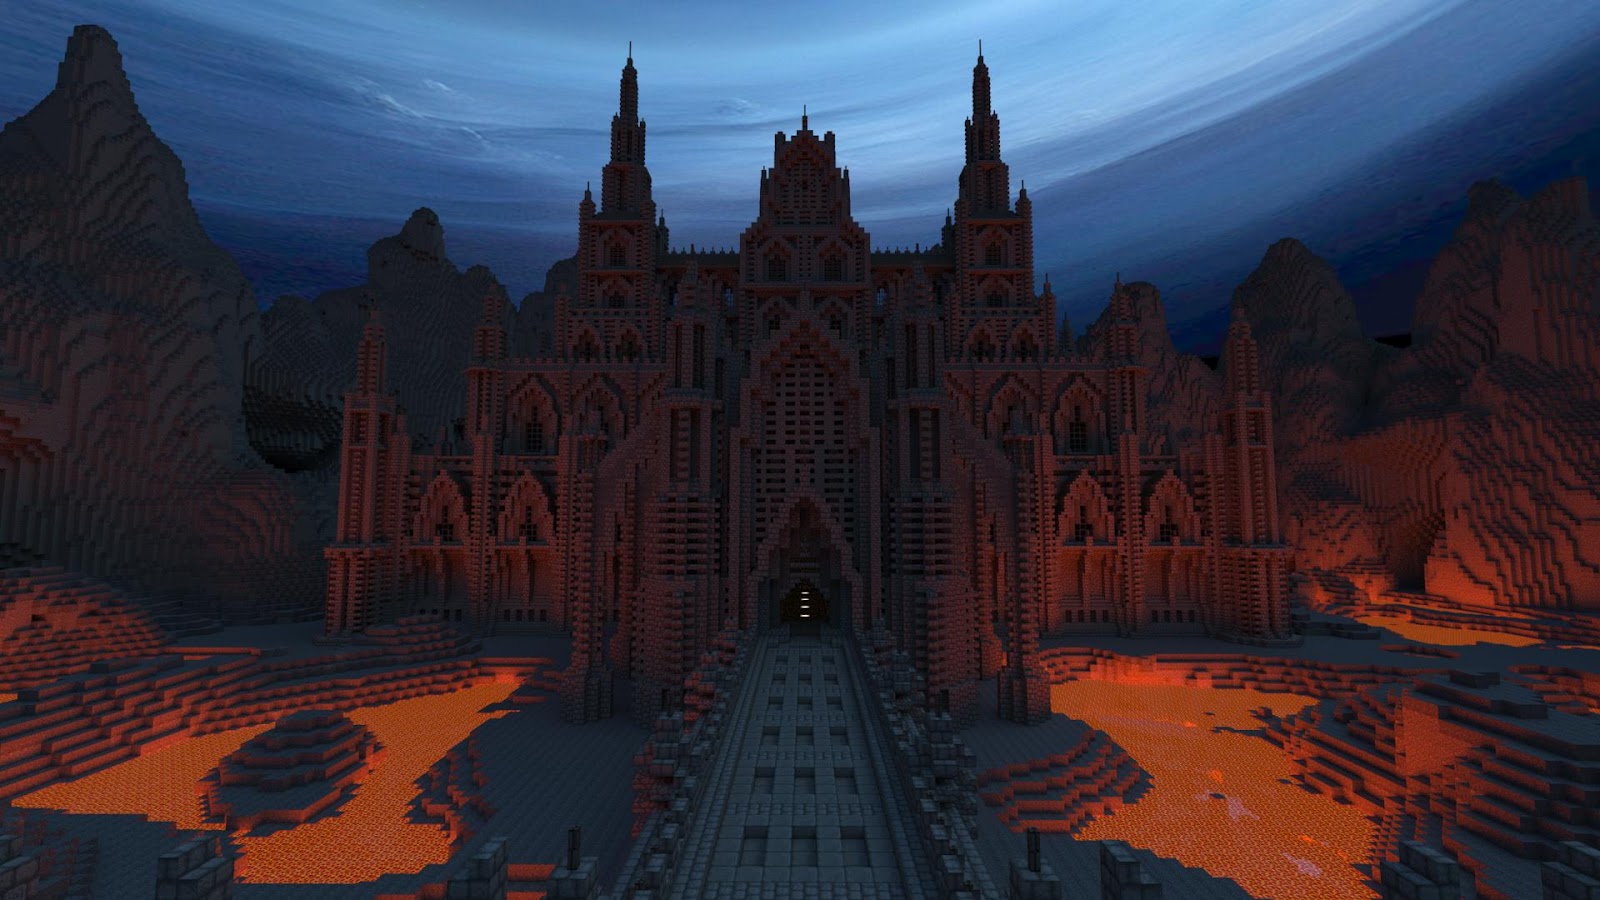 Dark+Gothic+Minecraft+Castle